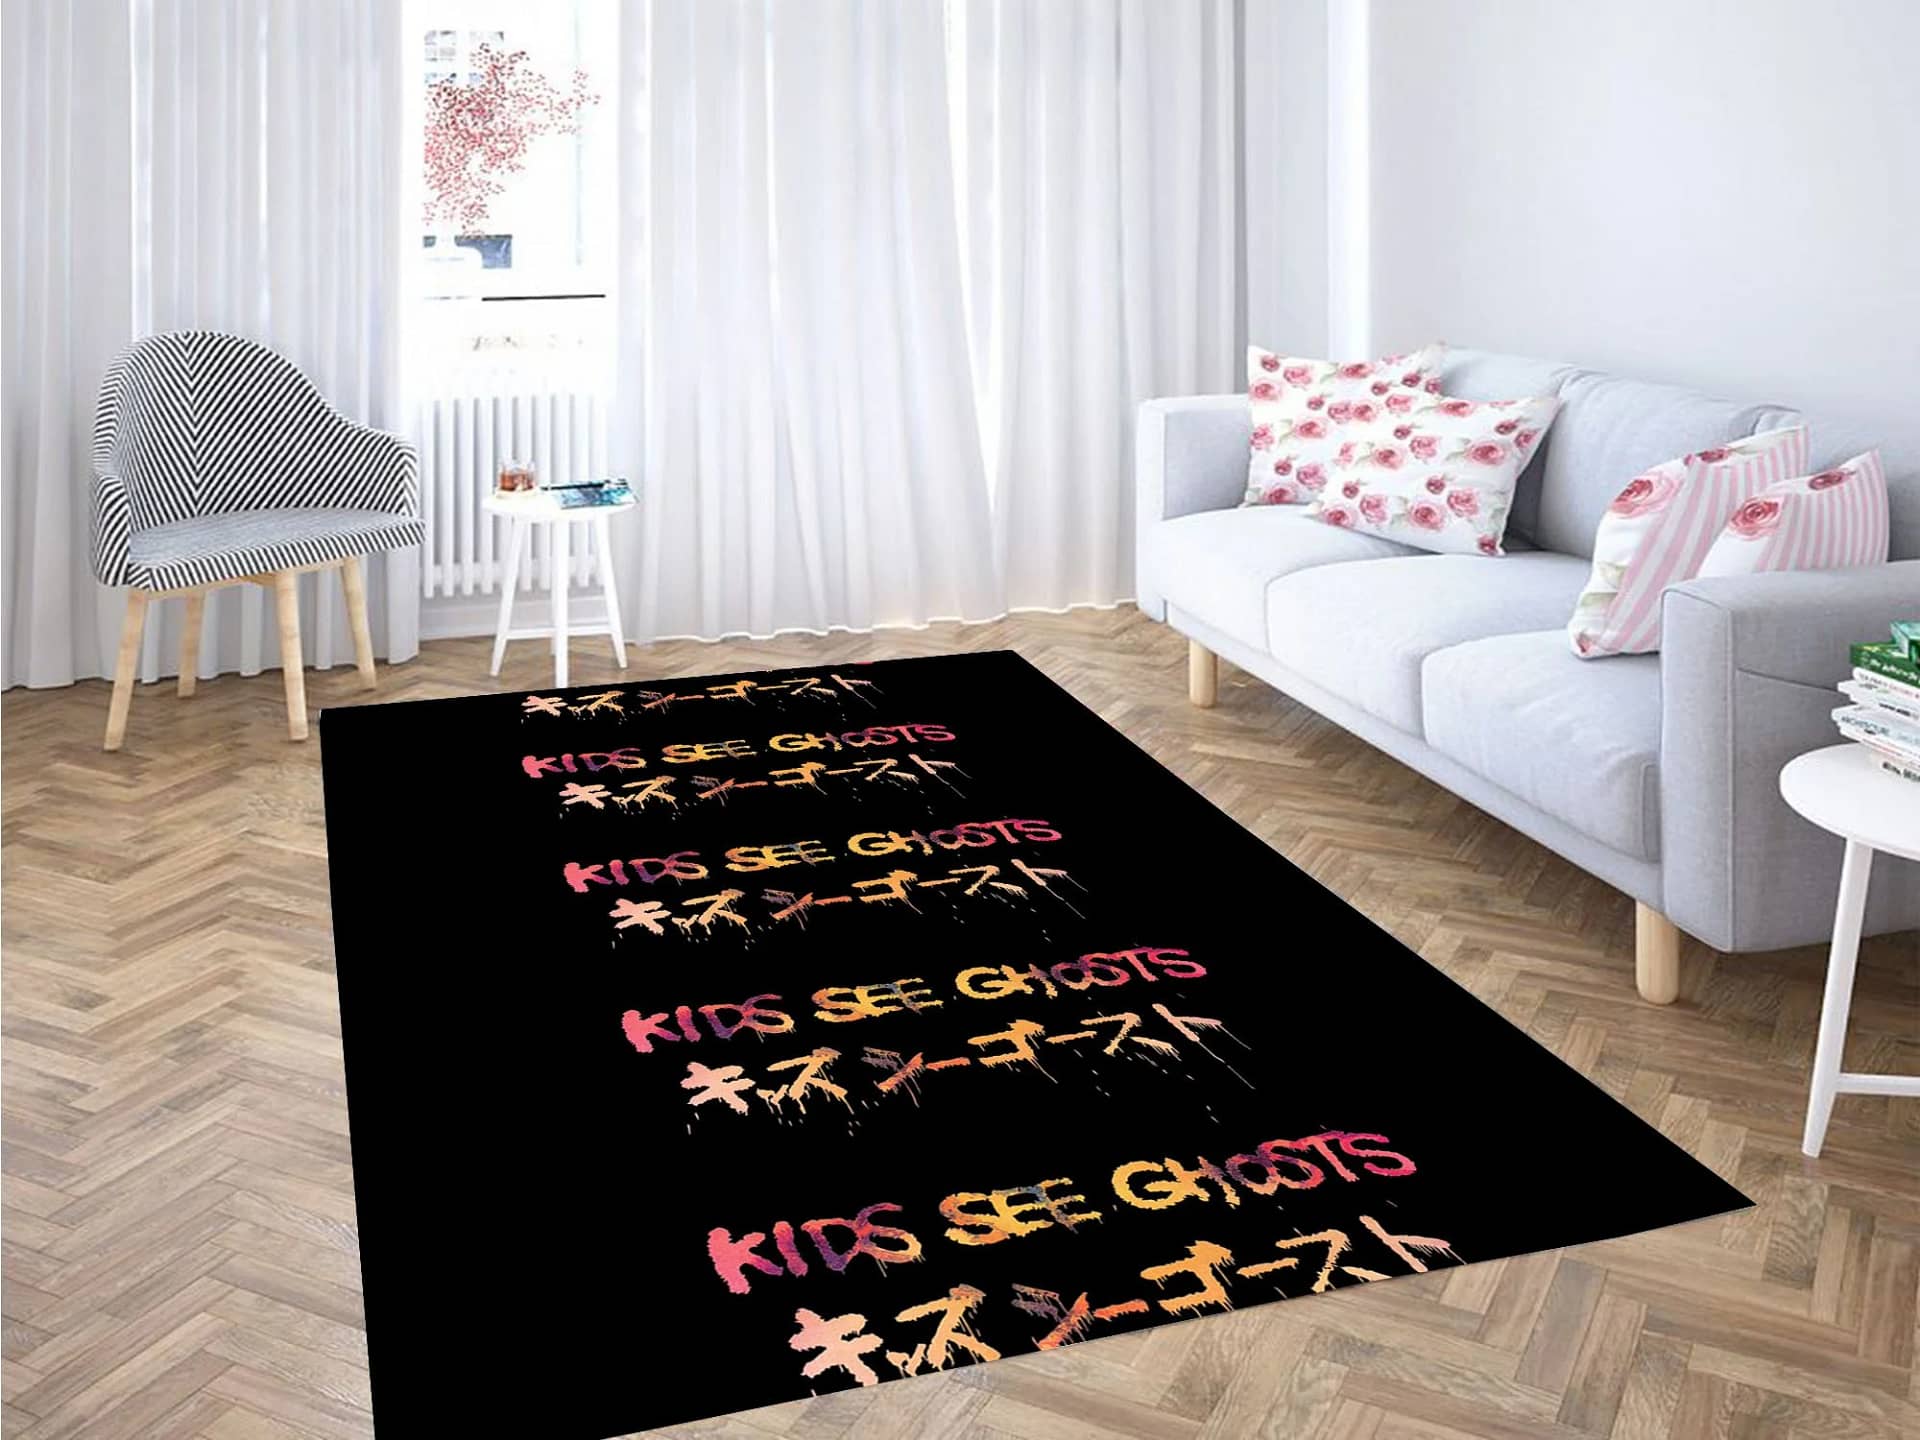 Kids See Ghost Japan Carpet Rug